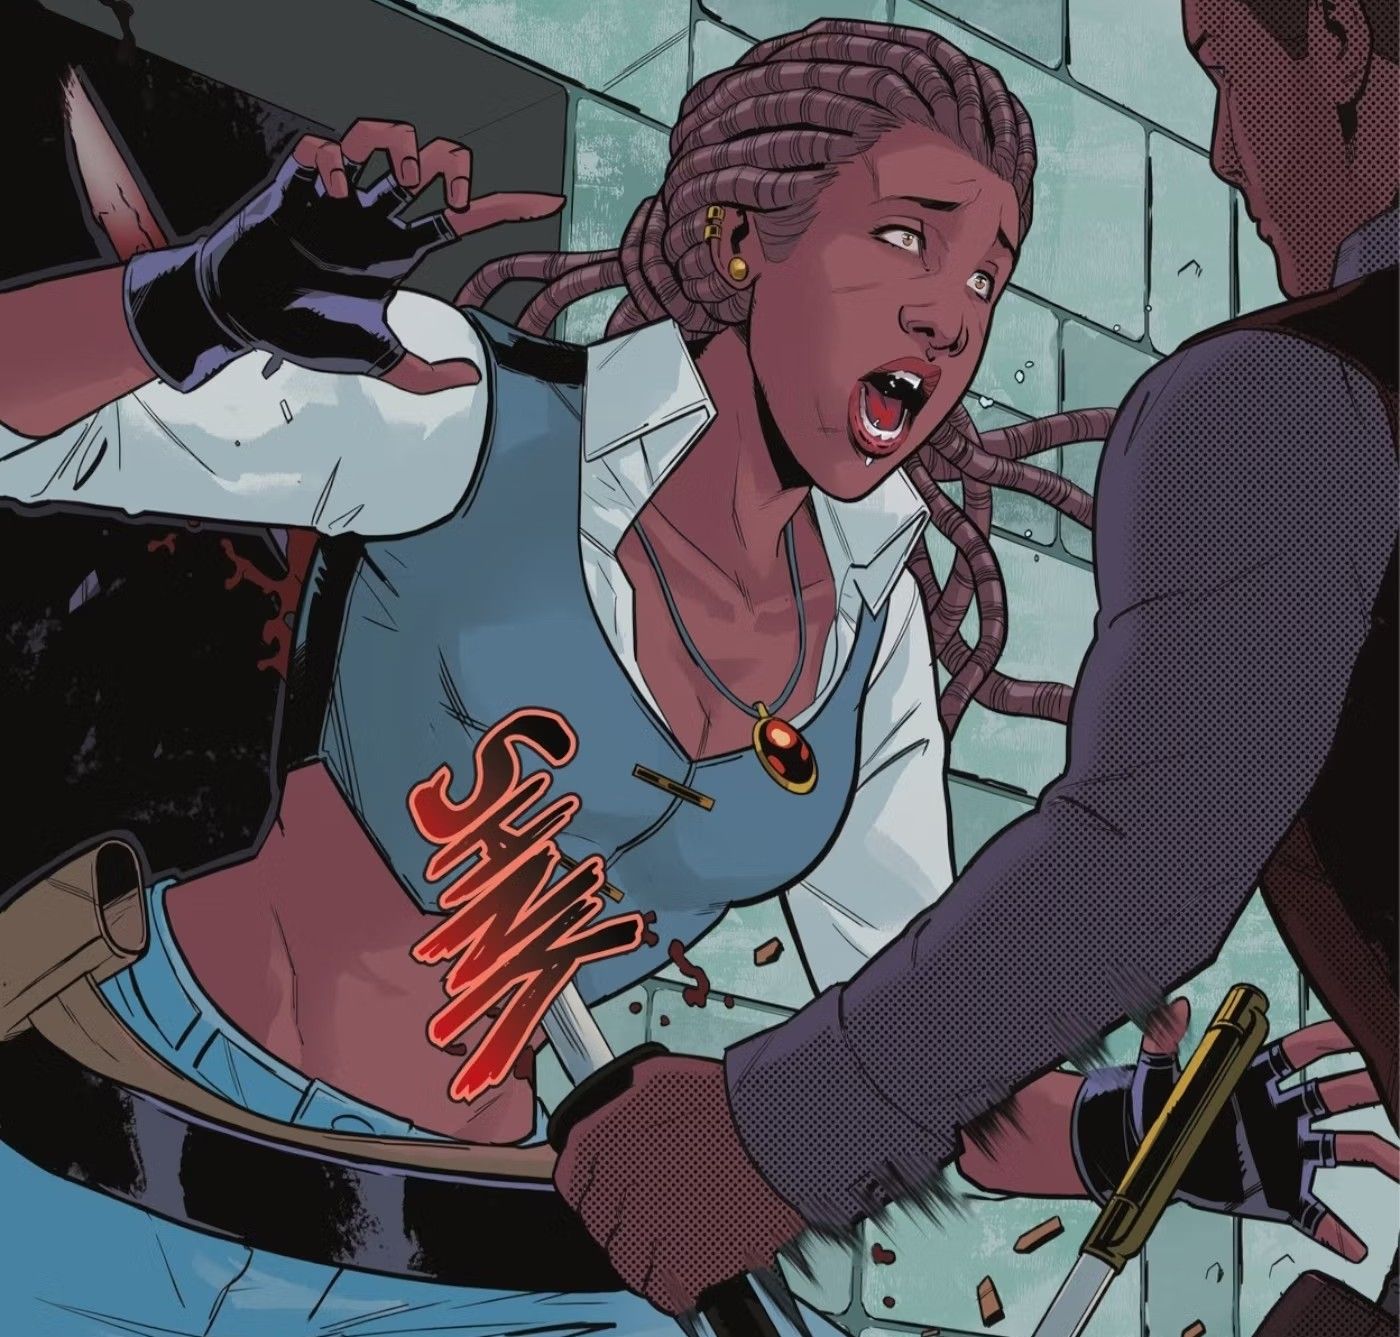 Panel de cómic: una mujer negra vestida de pirata es apuñalada en el estómago con una espada.